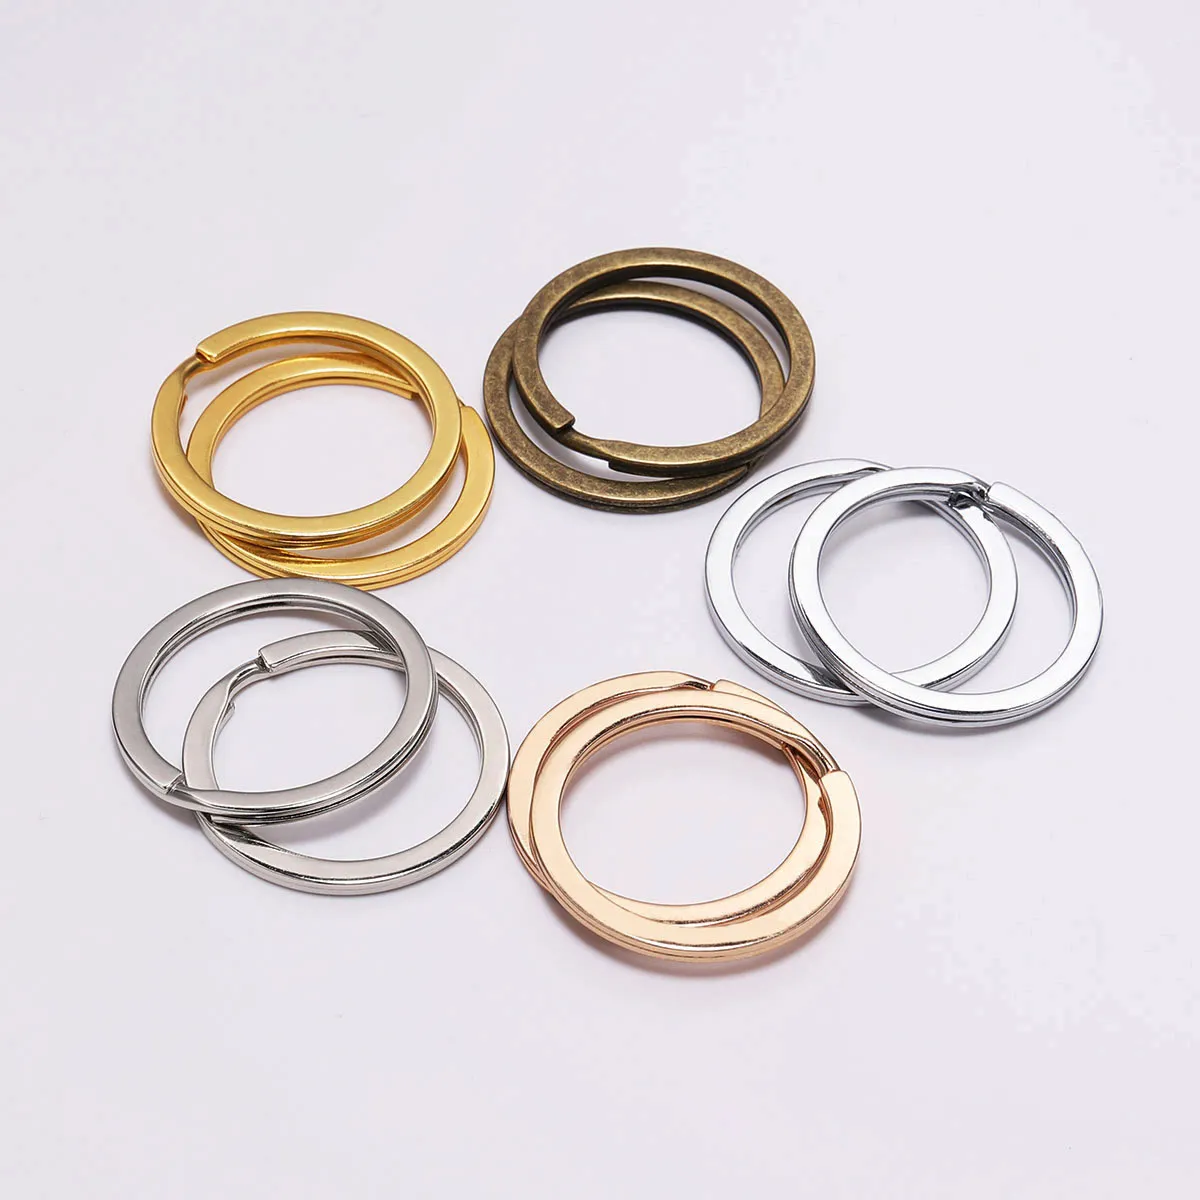 10 Teile/los 25/28/30mm Metall Gold Farbe Flache Runde Schlüsselring Verschluss Schlüssel Ring für DIY Schlüsselbund schmuck Machen Zubehör